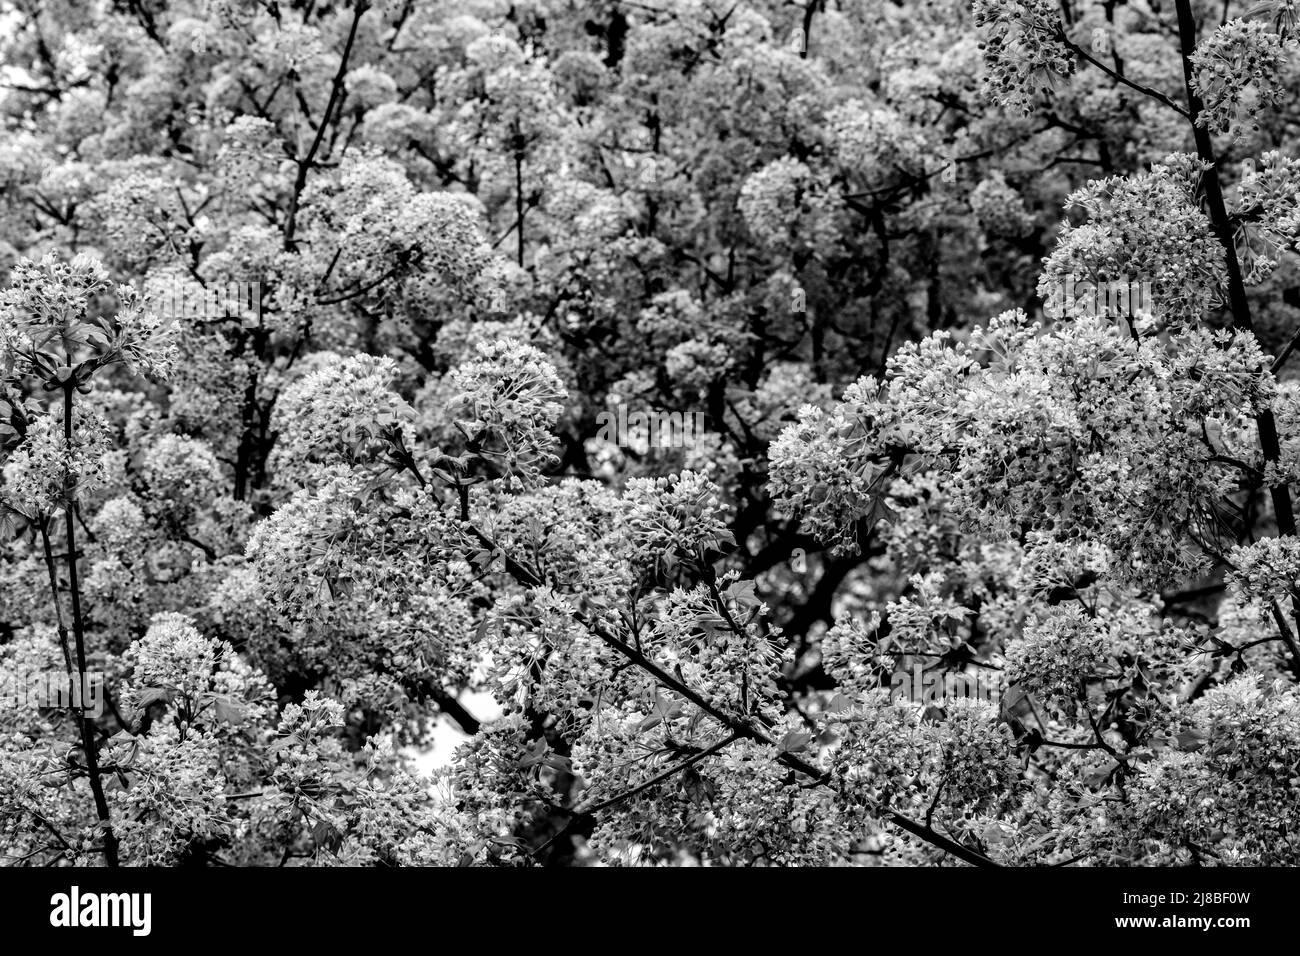 Ahornbaum blüht im Frühjahr in Schwarz-Weiß - Stock-Fotografie Stockfoto